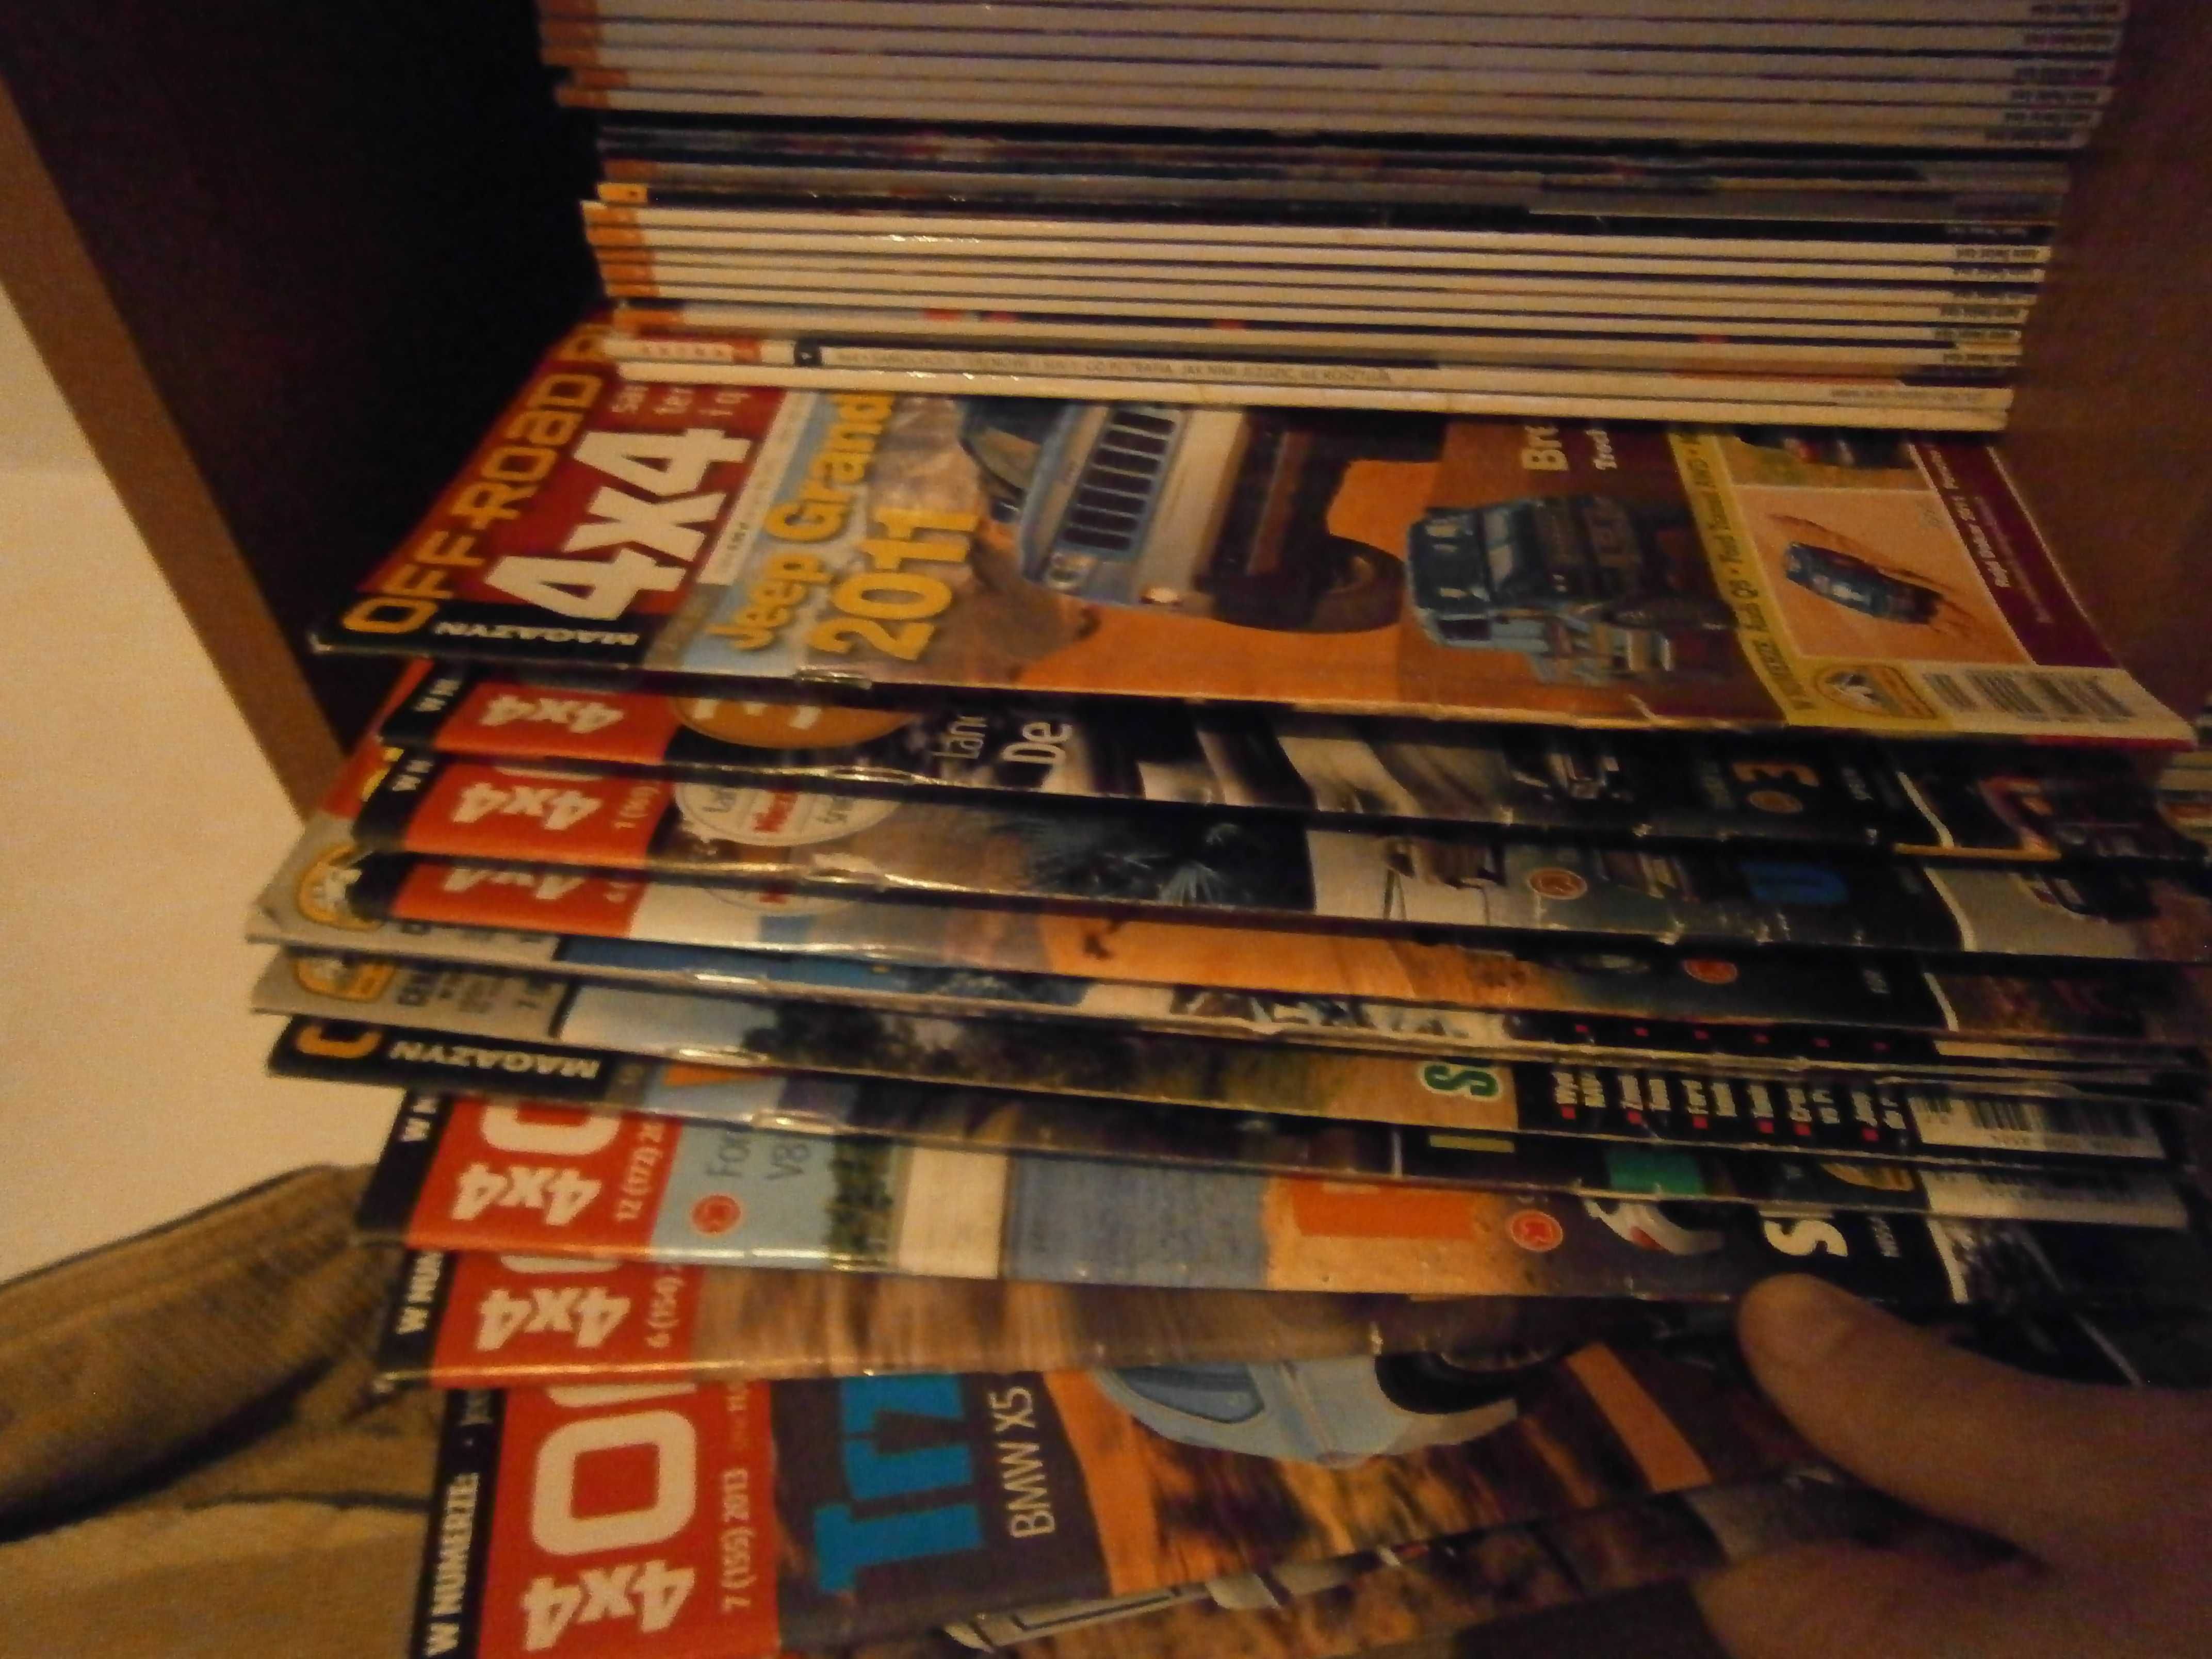 Gazety czasopisma Off road i Auto Świat 4x4